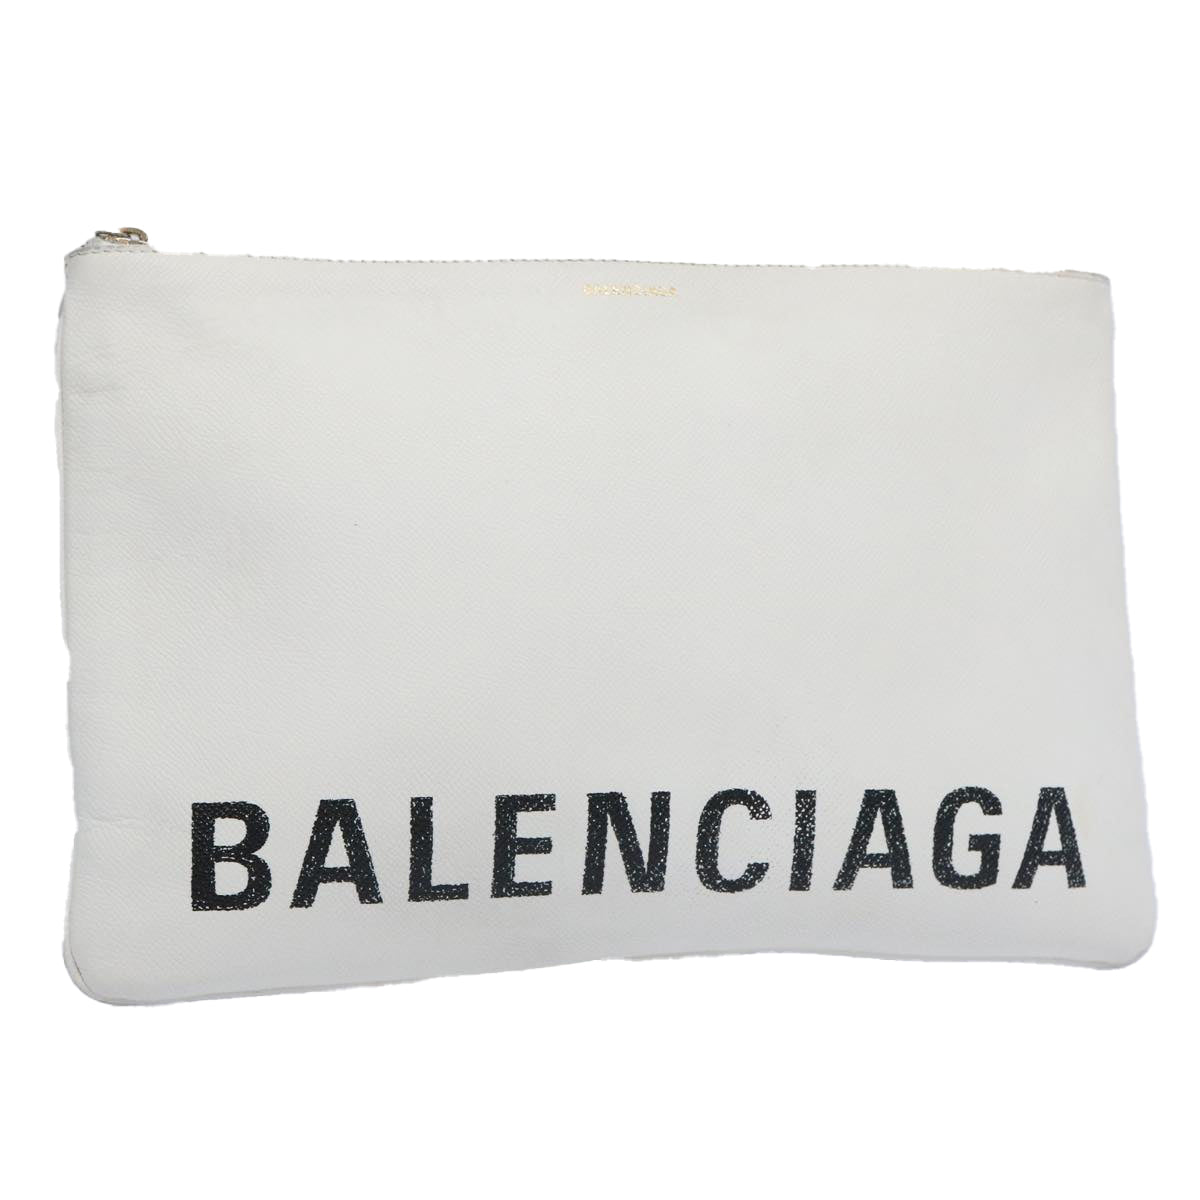 BALENCIAGA Clutch Bag Leather White Auth bs11590